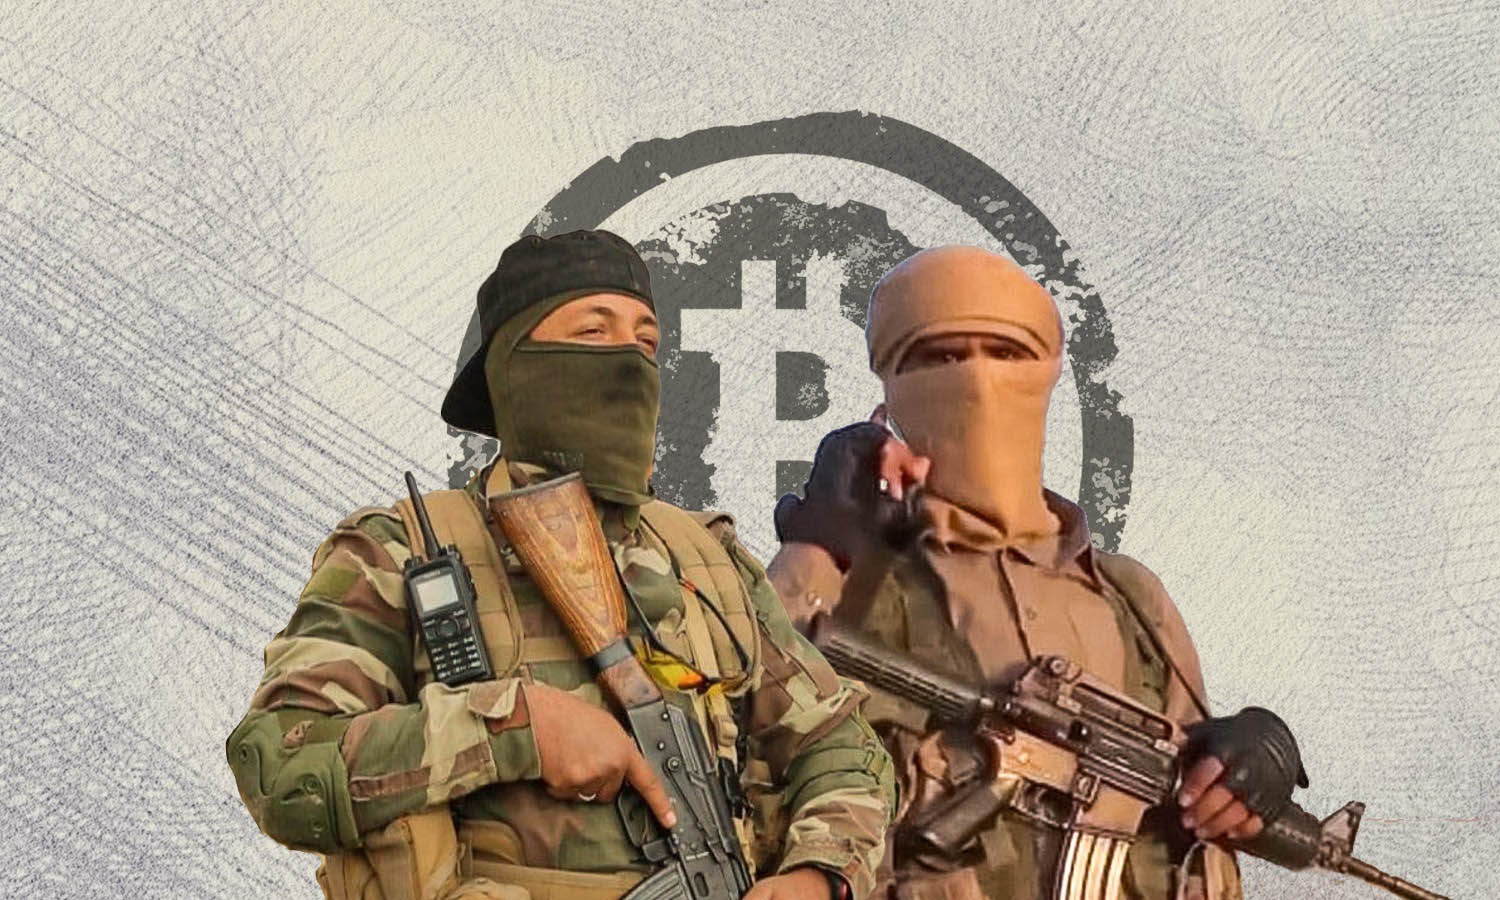 عنصر من هيئة تحرير الشام وعنصر من تنظيم الدولة الاسلامية مع شعار الـ"Bitcoin"(تعديل عنب بلدي)